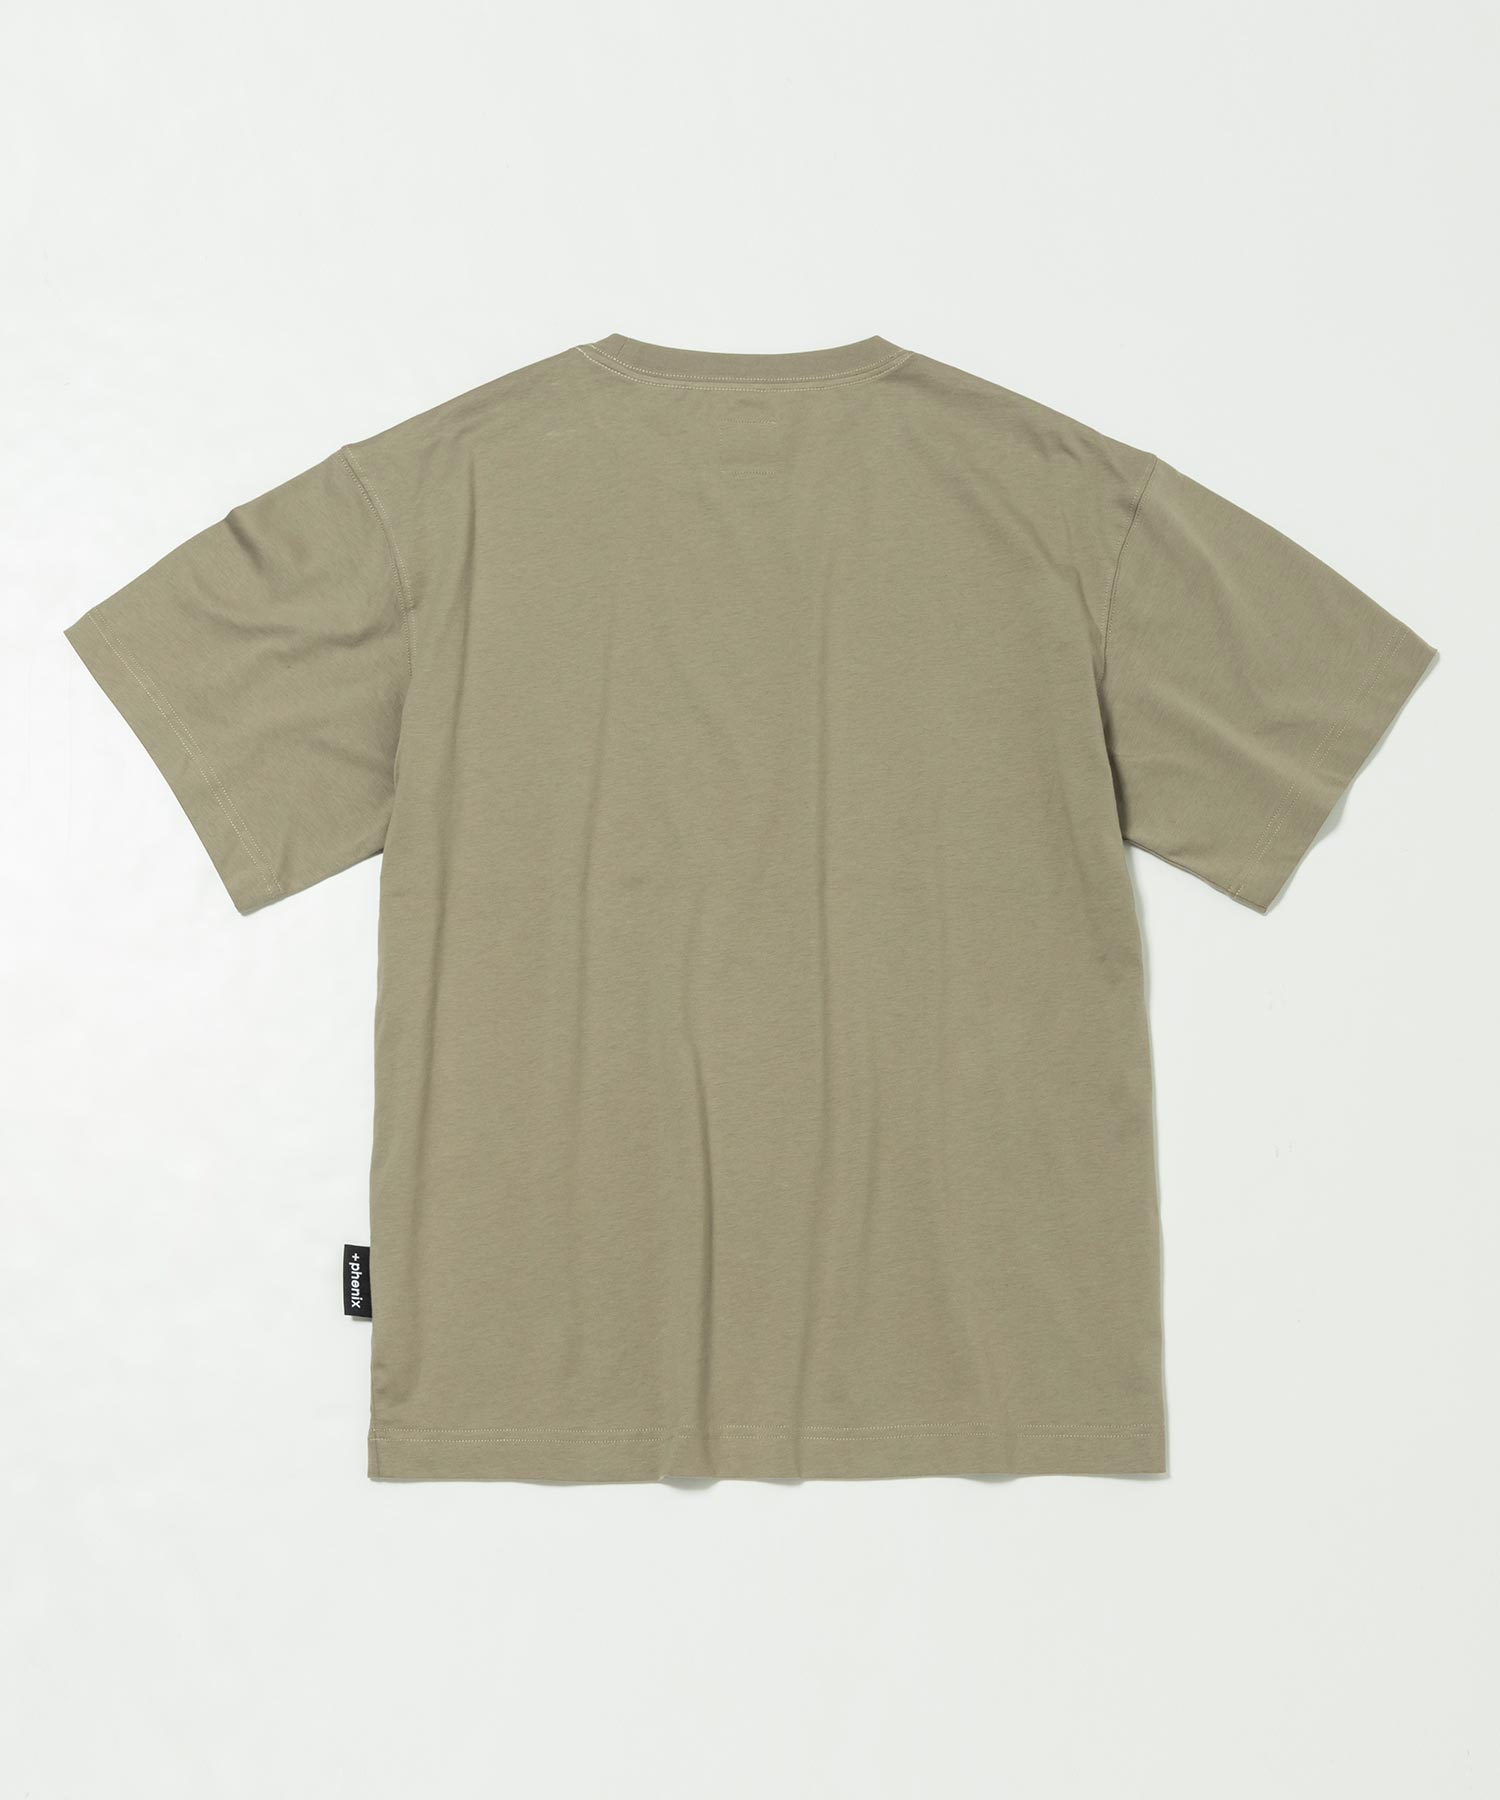 【MENS】T-SHIRTS コットンシャツ 綿100% メンズTシャツ シンプルデザイン ベーシック +phenix(プラスフェニックス)